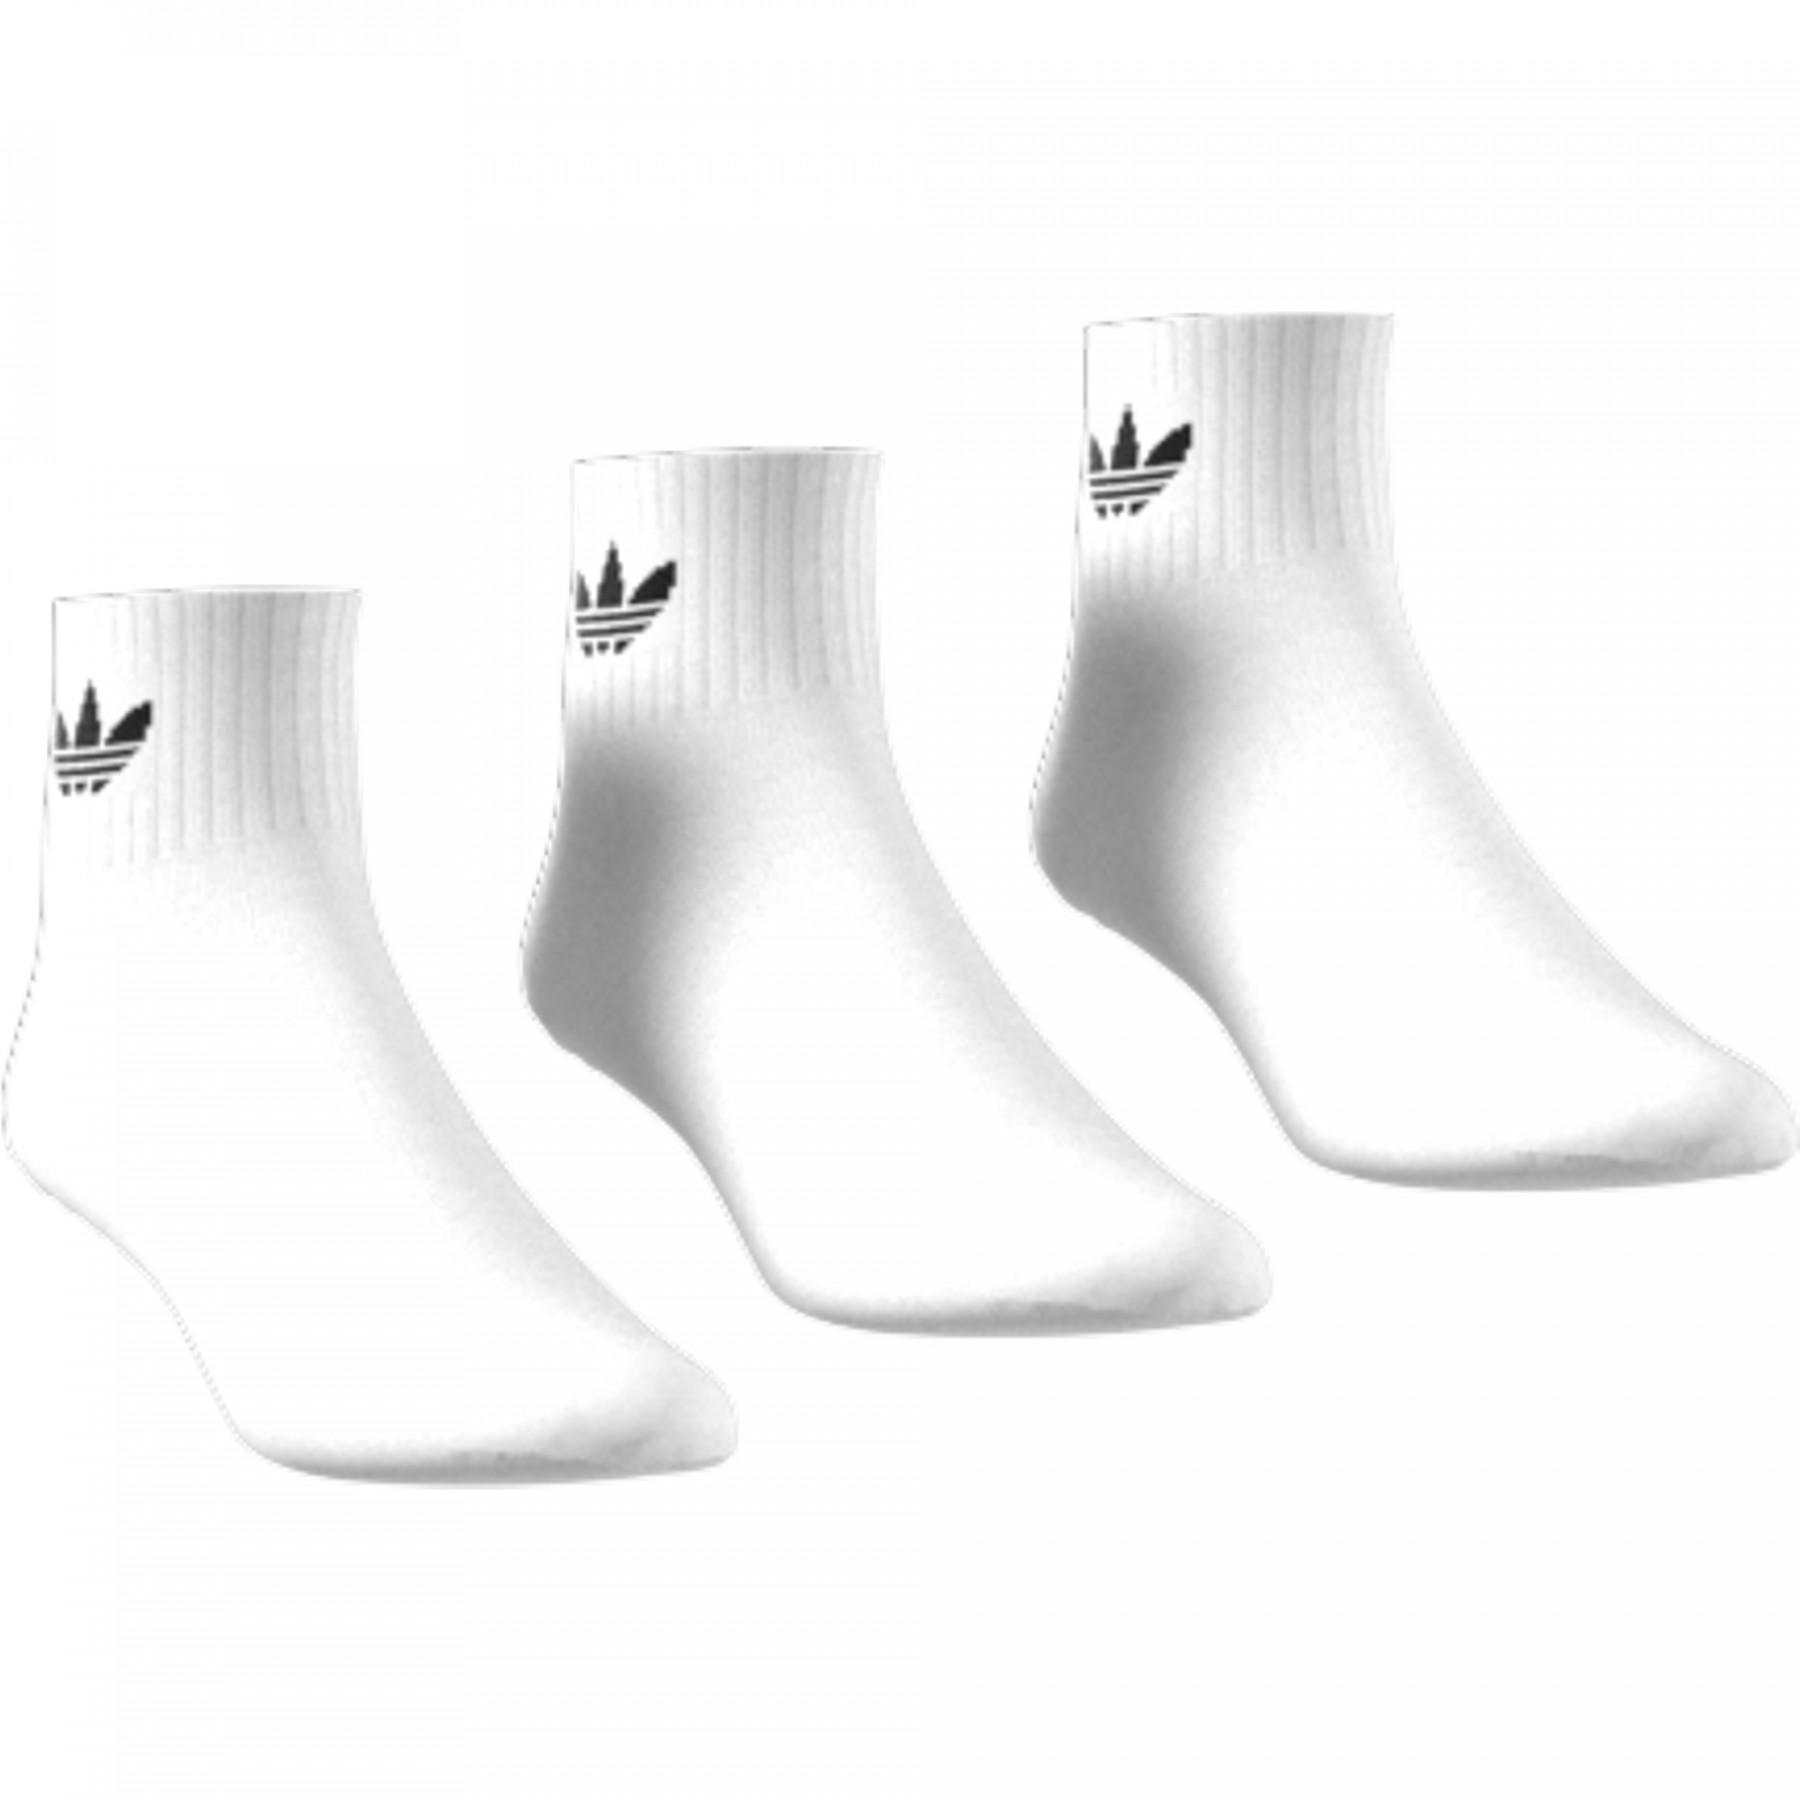 Socken adidas originals (3 paires)